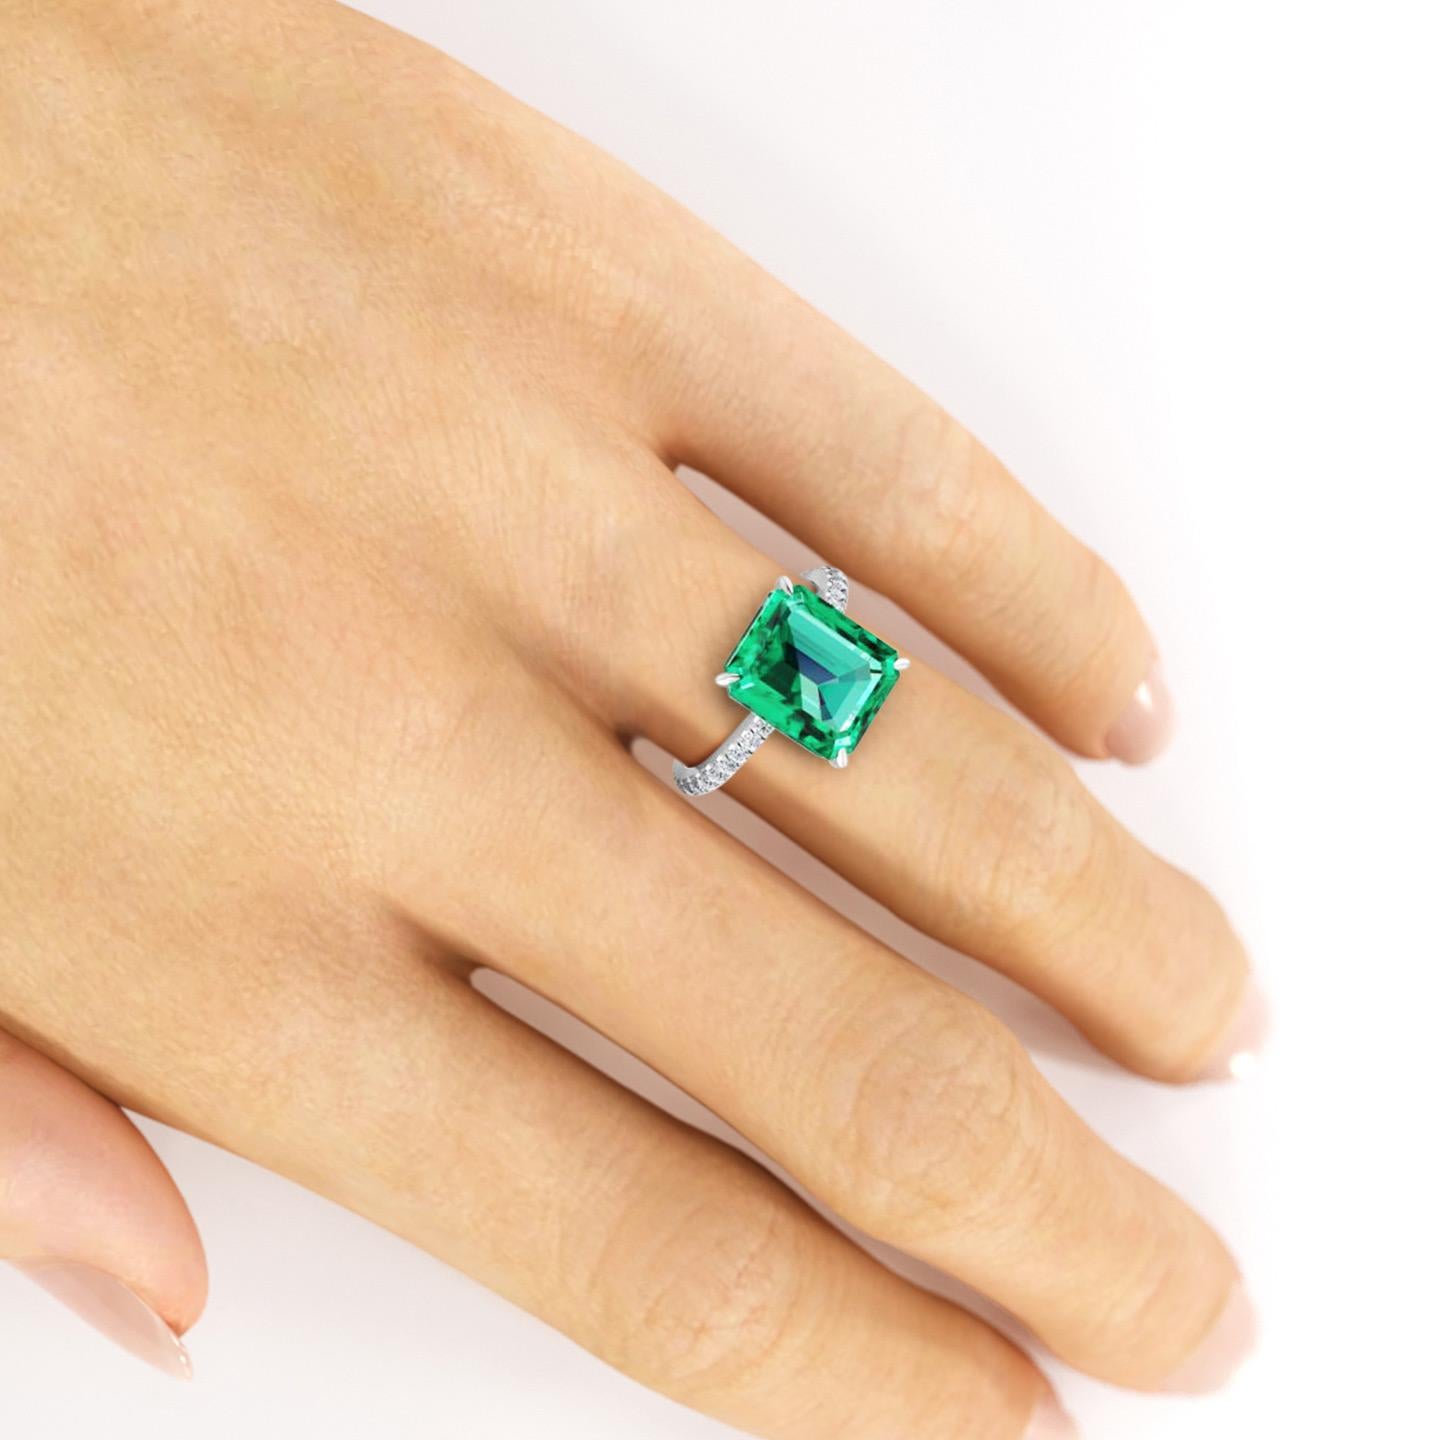 FERRUCCI GIA Certified 4.53 Carat Emerald Cut Emerald Diamond Platinum Ring 2